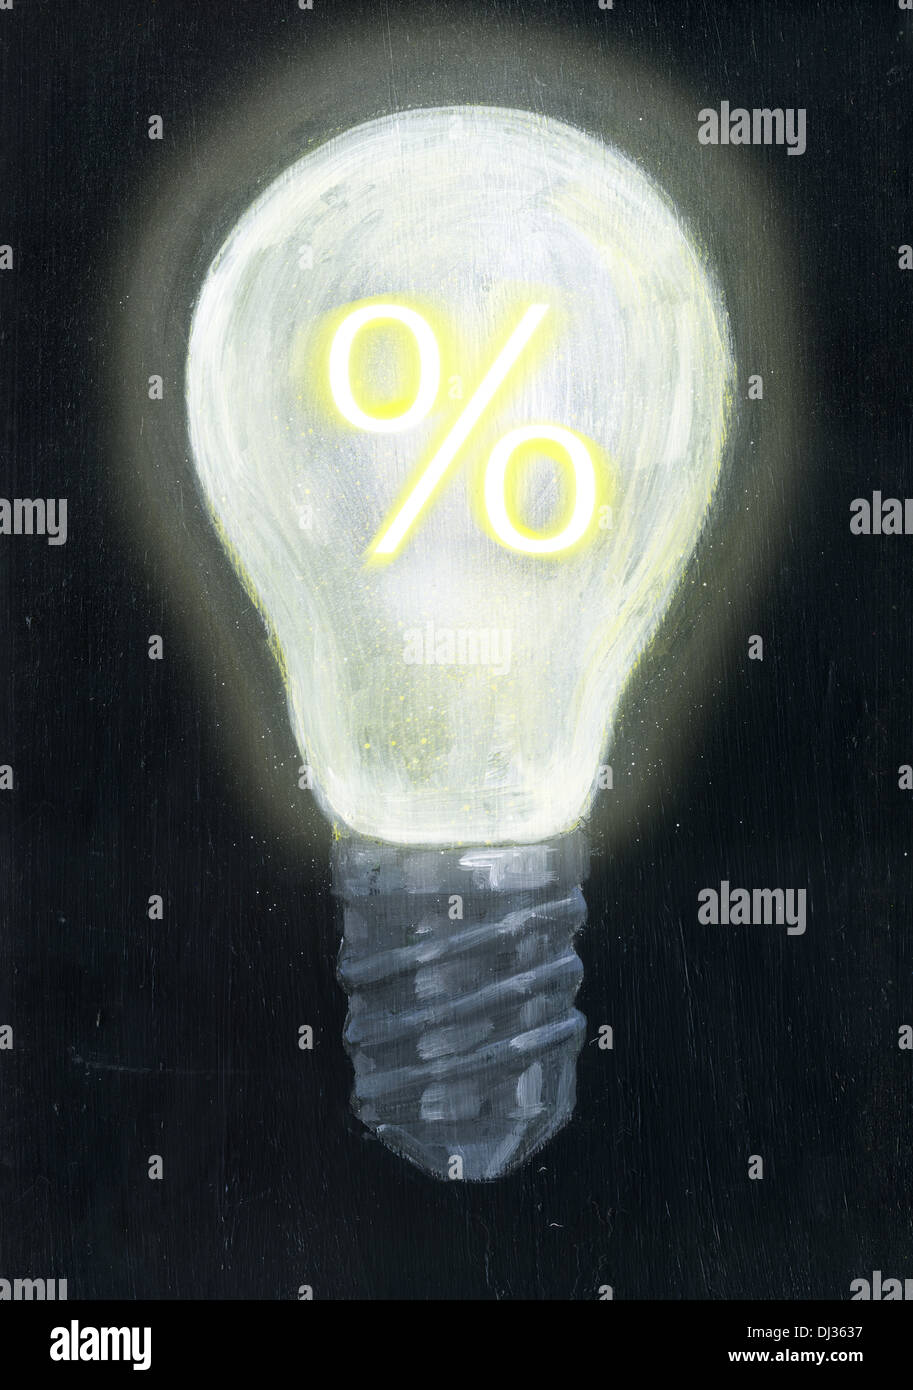 Immagine illustrativa della lampadina con percentuale di segno che rappresenta la redditività Foto Stock